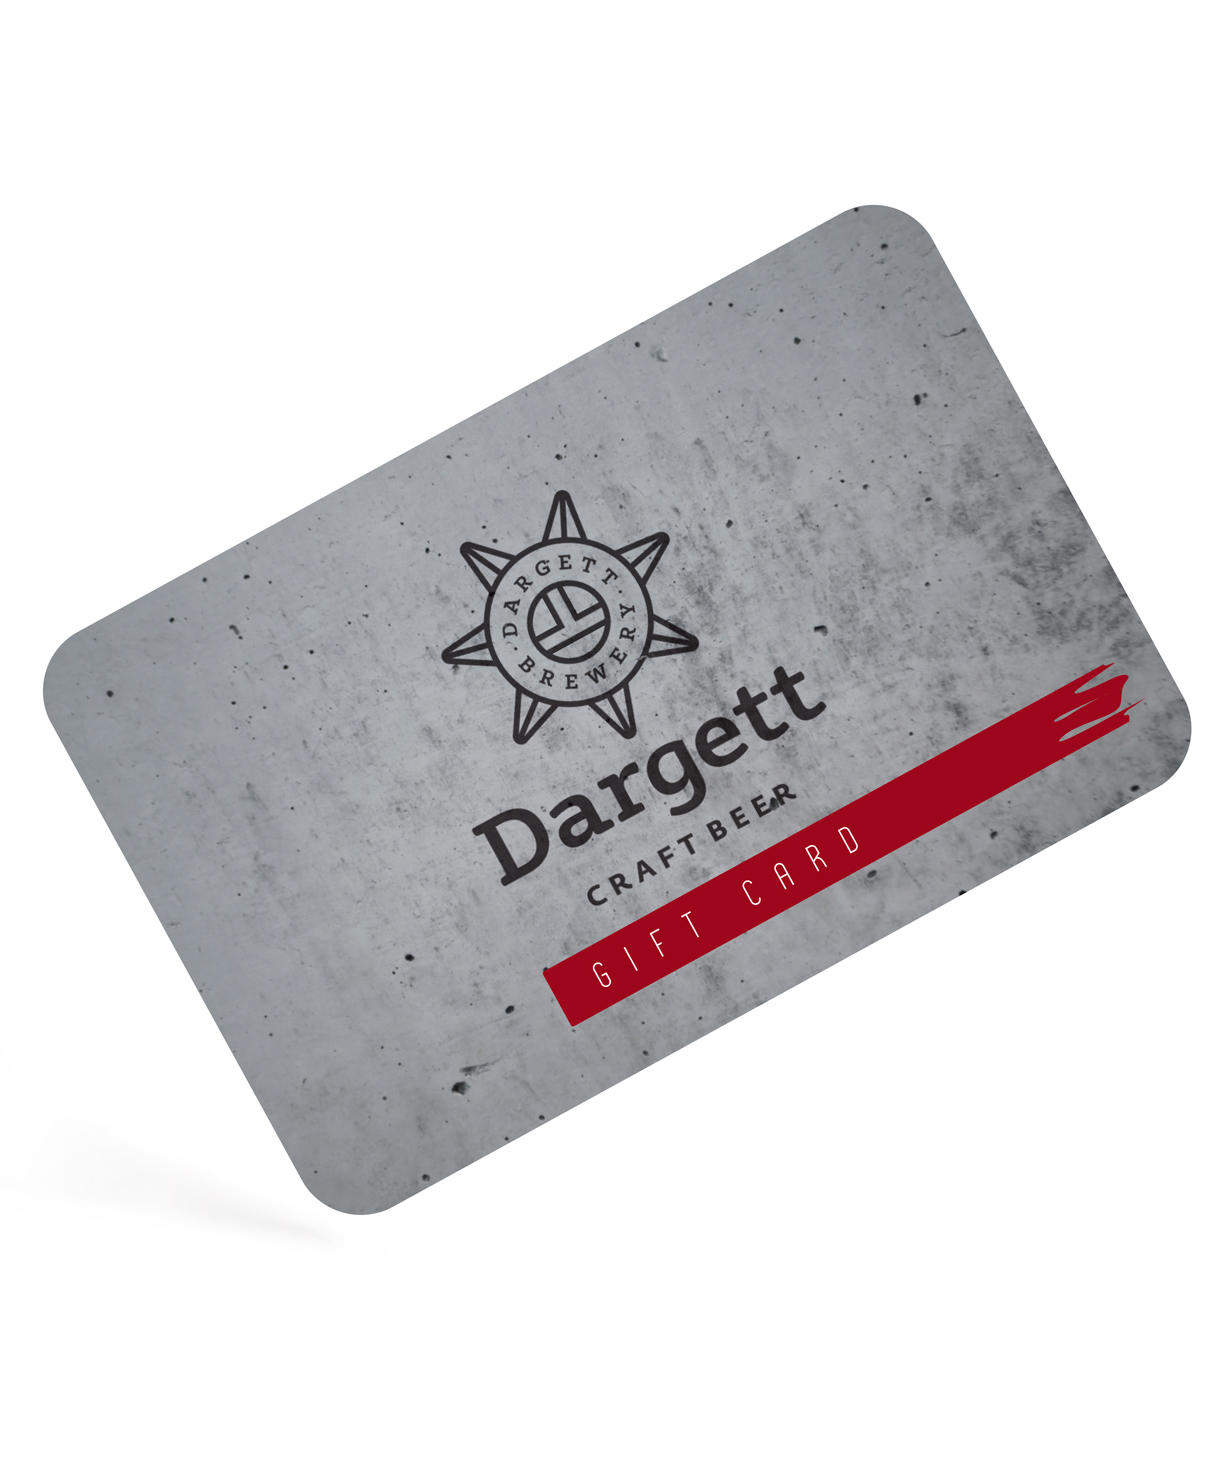 Նվեր-քարտ «Dargett» 25.000